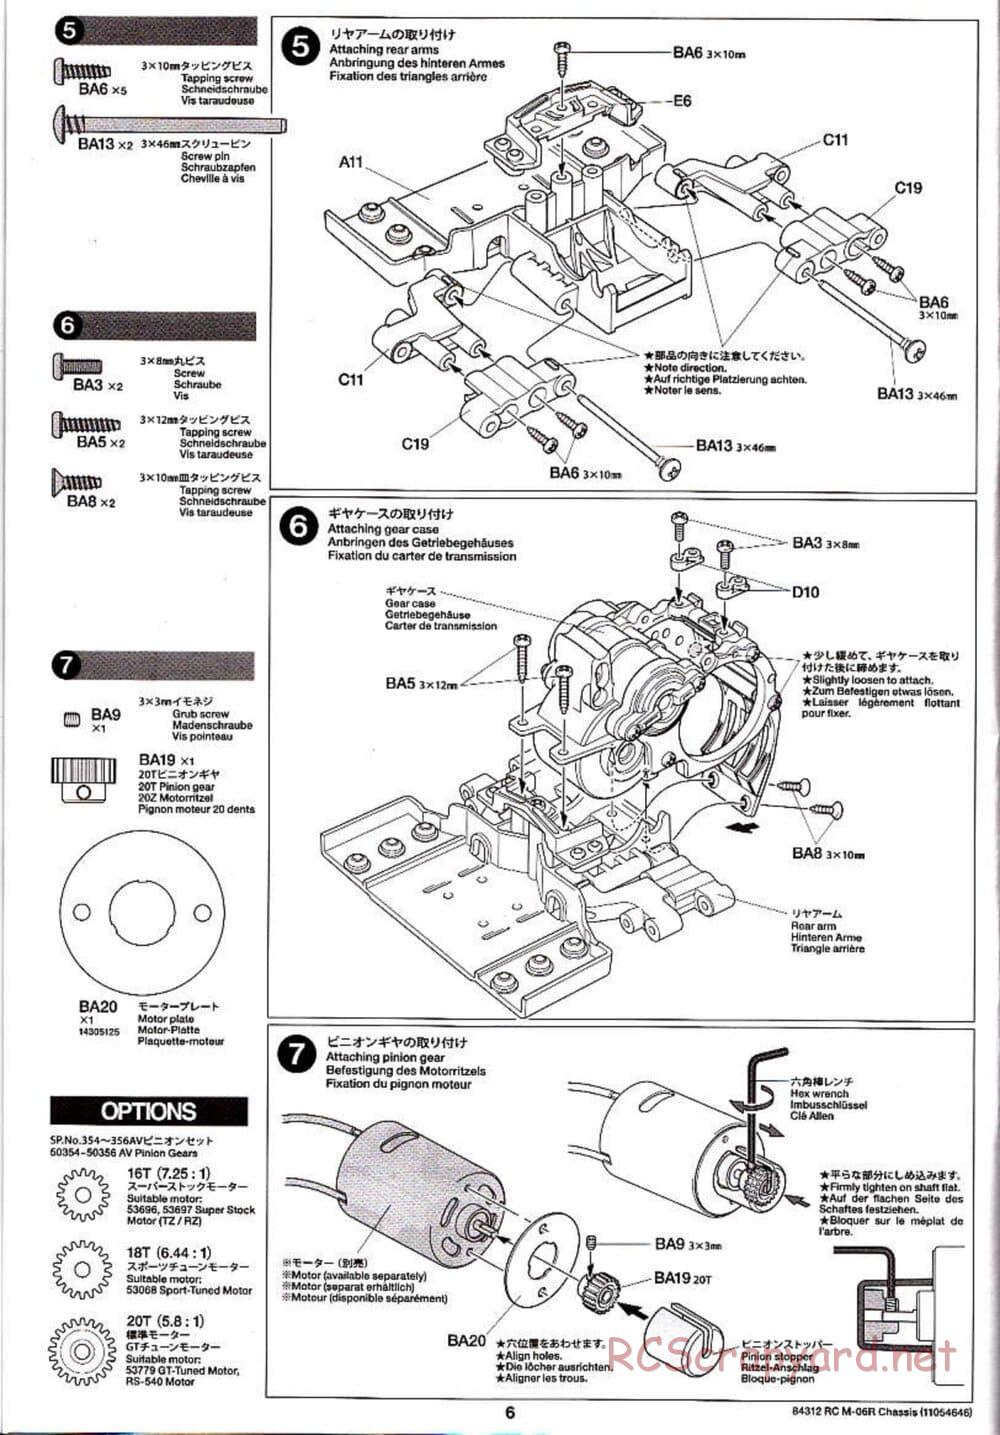 Tamiya - M-06R Chassis - Manual - Page 6